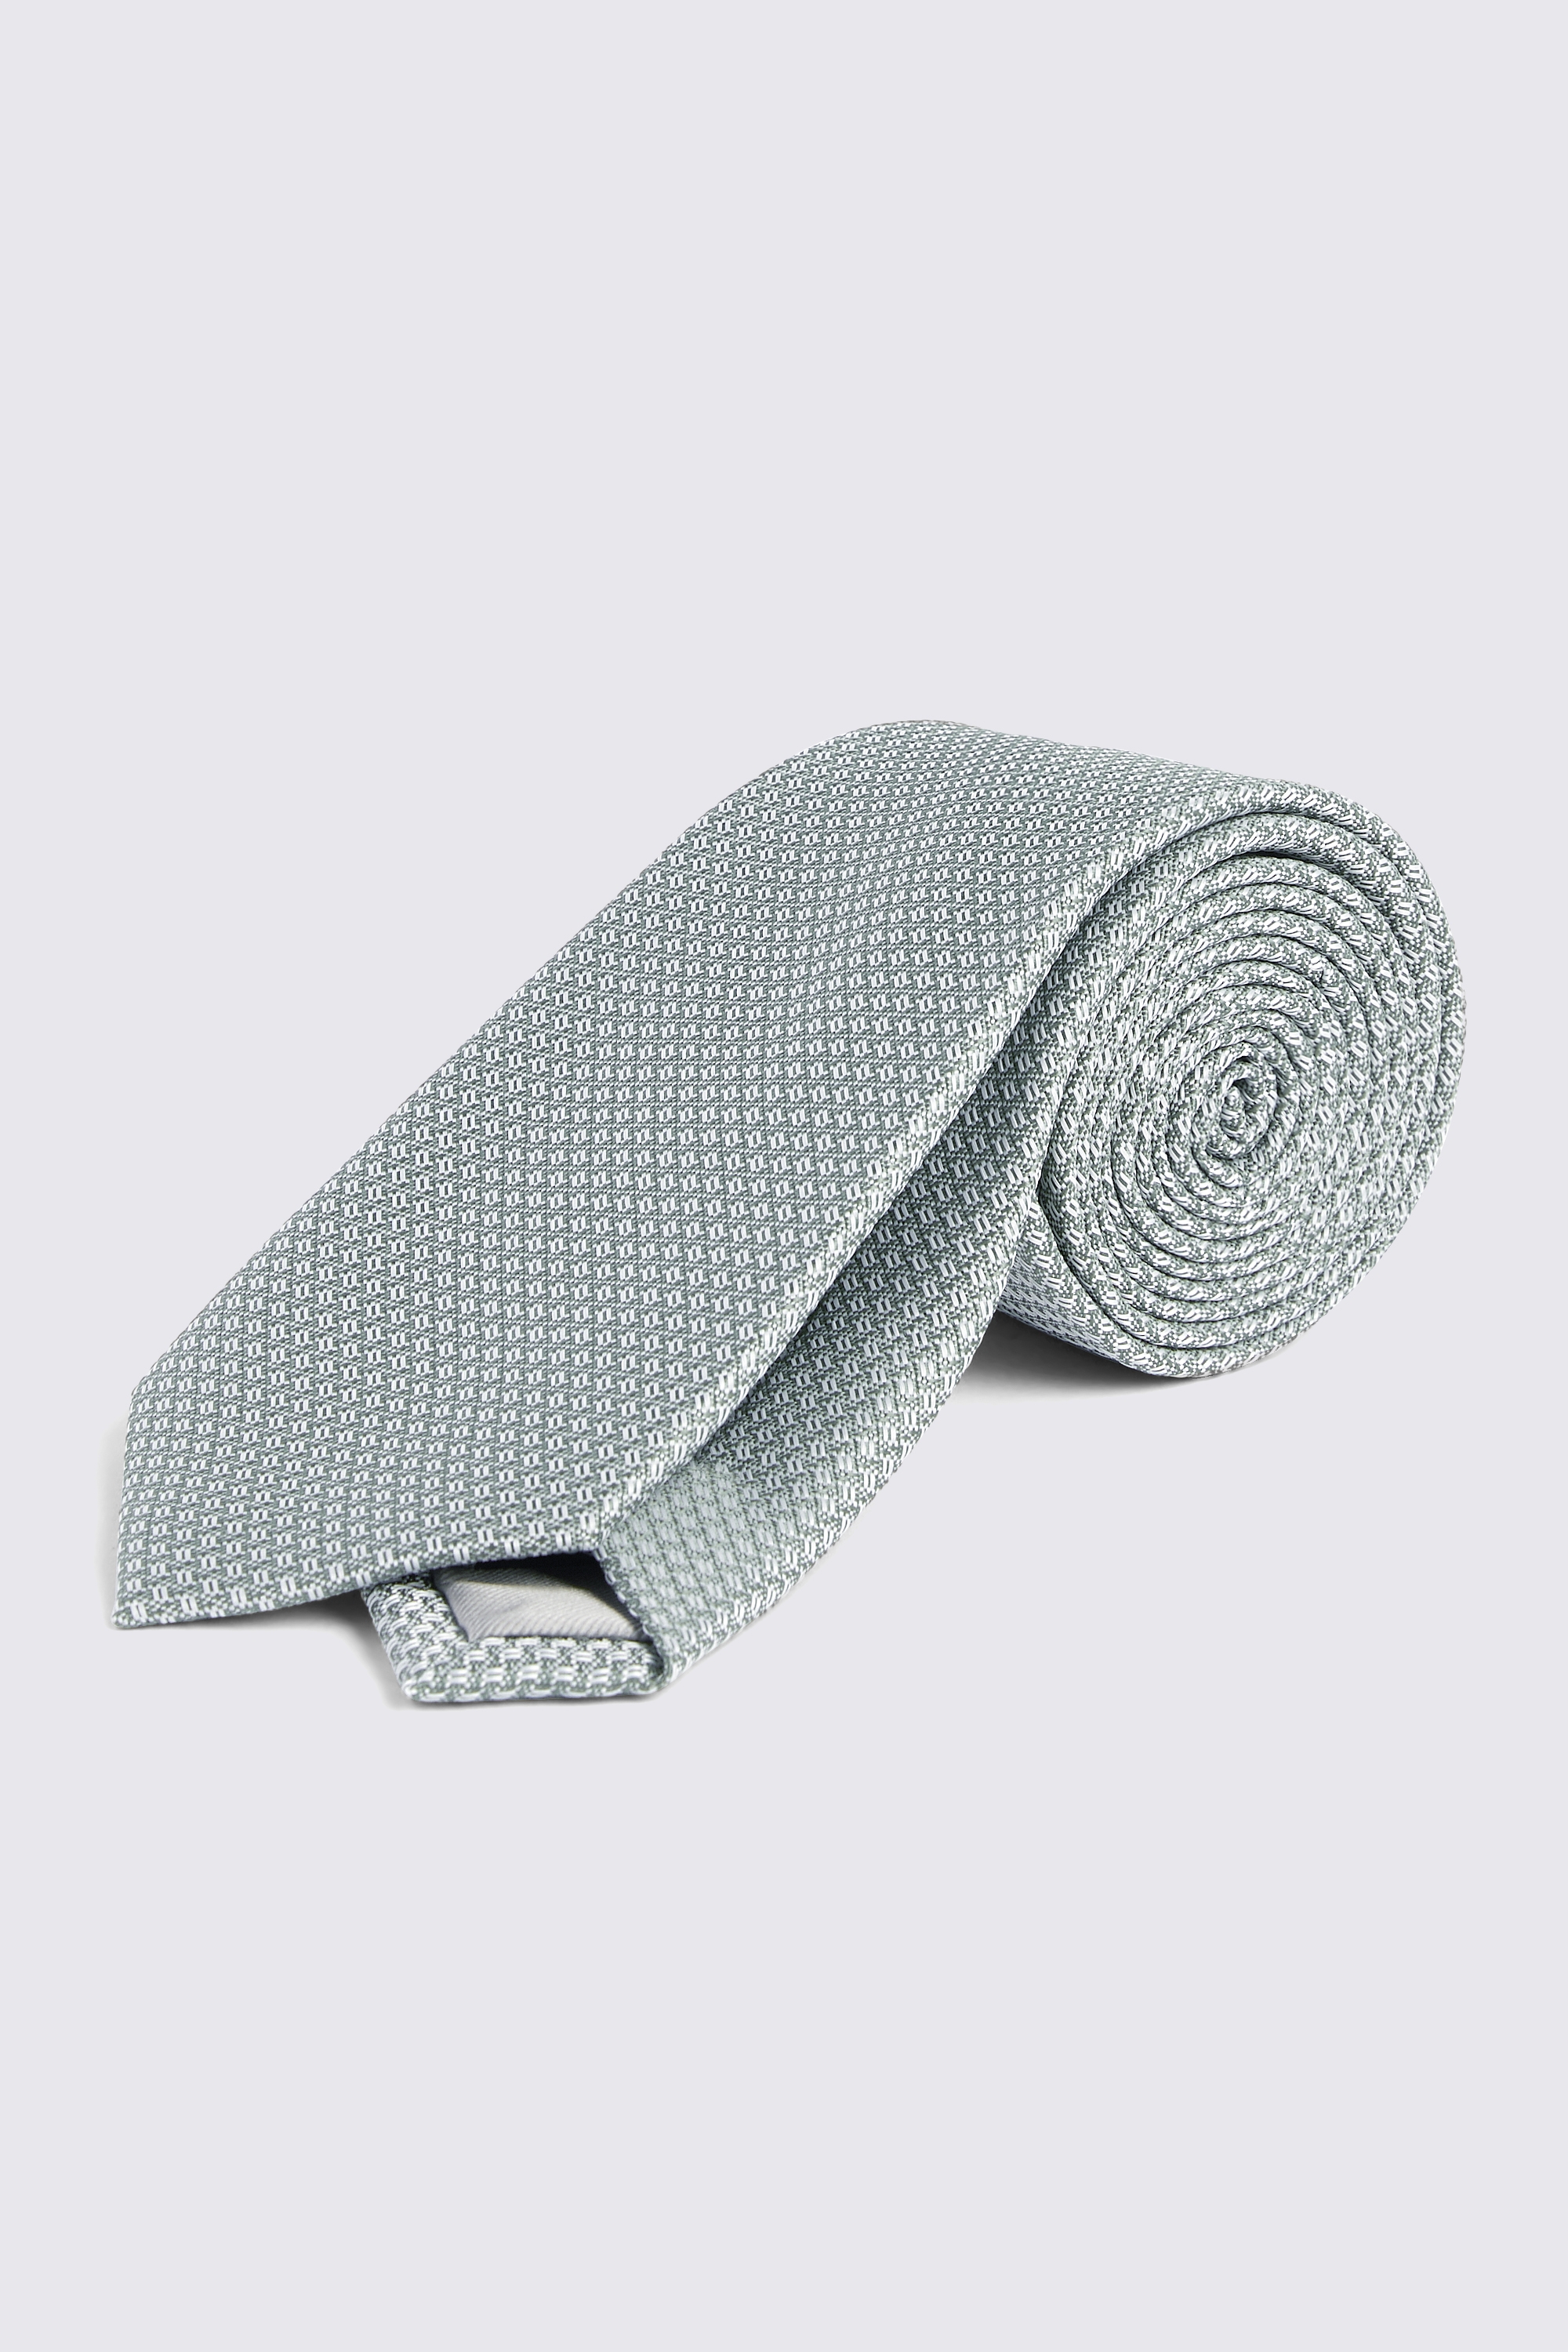 Sage Textured Tie | Buy Online at Moss